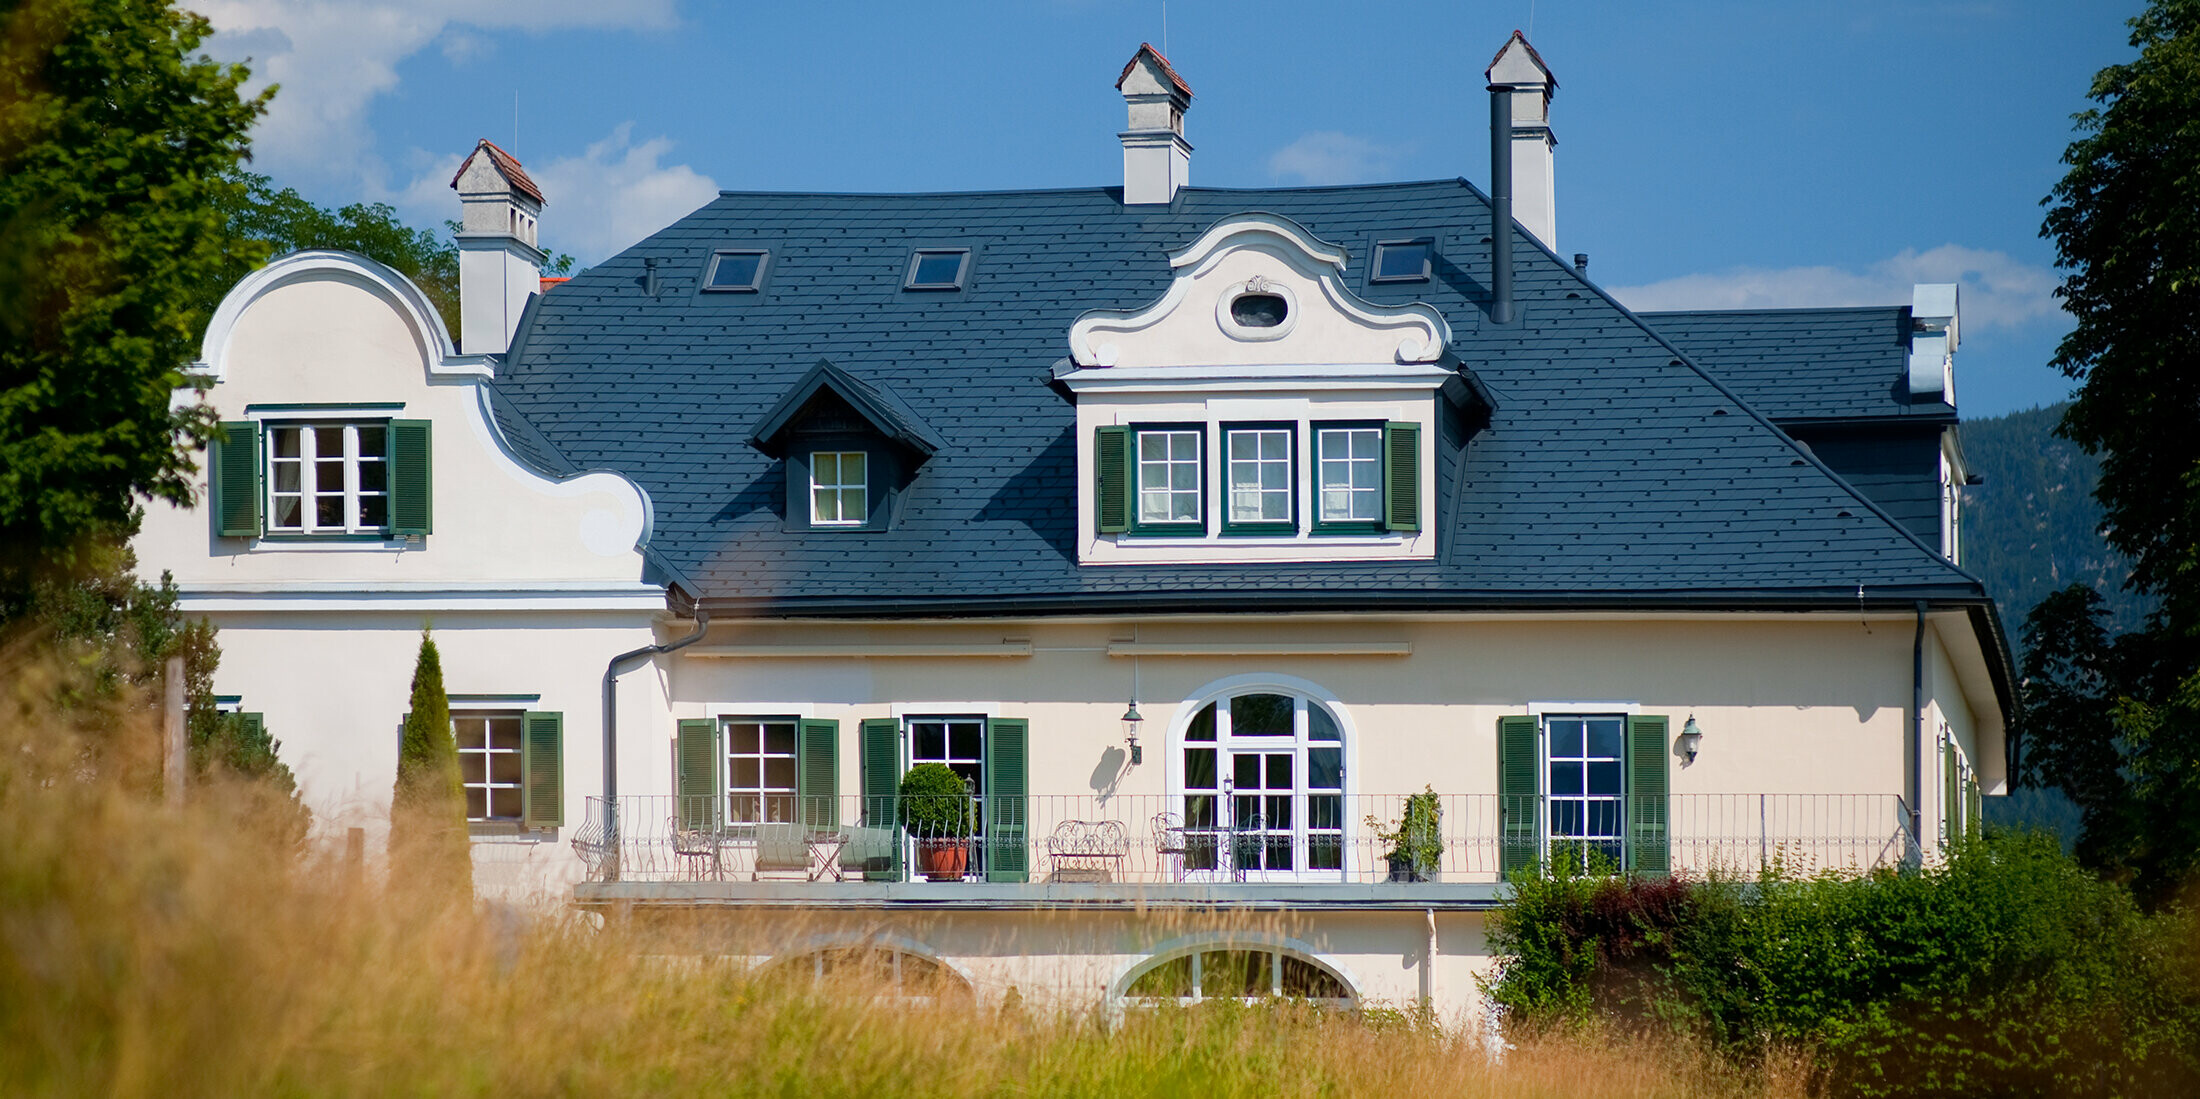 Blick aus der Ferne auf eine Villa in Bad Aussee, Österreich. Das Dach der Villa wurde mit robusten PREFA Dachschindeln in der Farbe P.10 Anthrazit verkleidet.